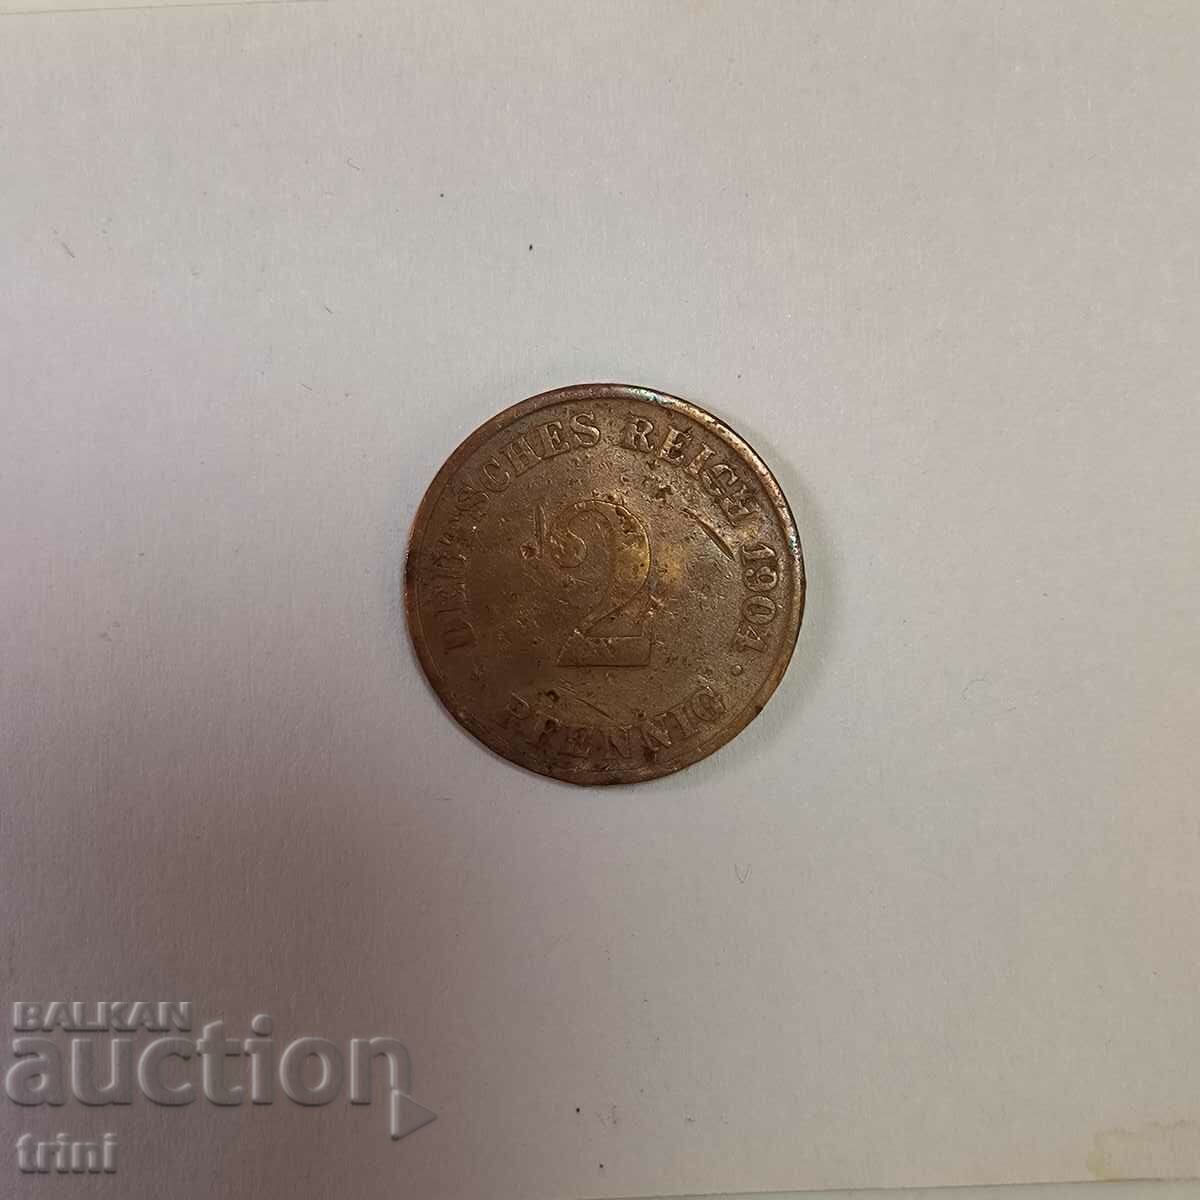 Γερμανία 2 Pfennig 1904 'J' - Αμβούργο μικρό νομισματοκοπείο, σπάνιο